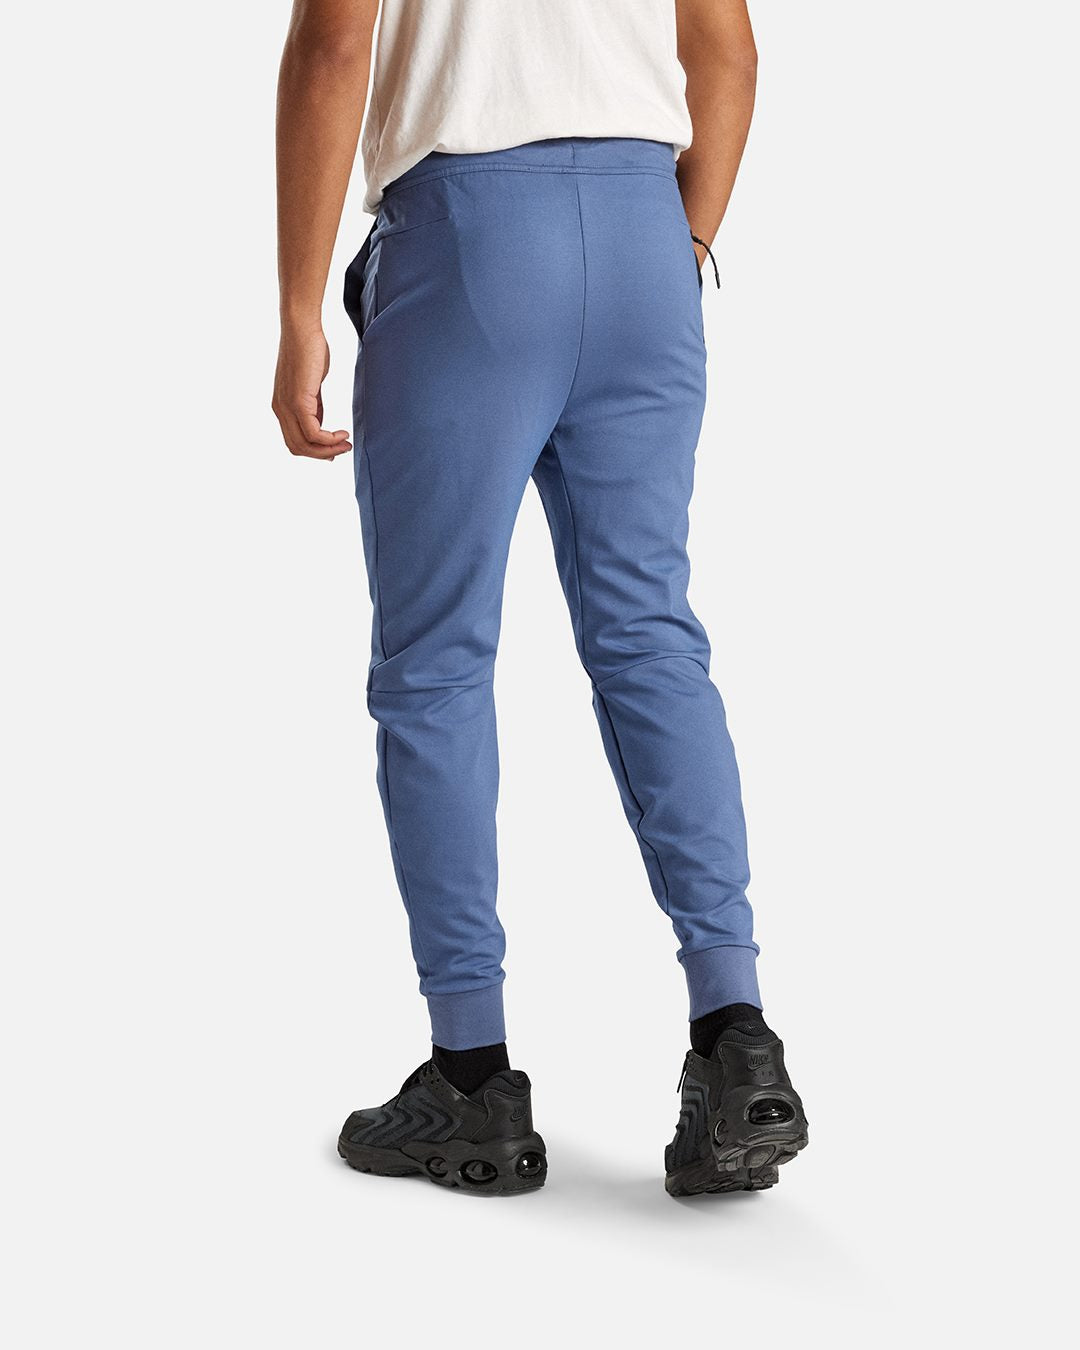 Pantalon Nike Tech Fleece Lightweight - Bleu/Noir